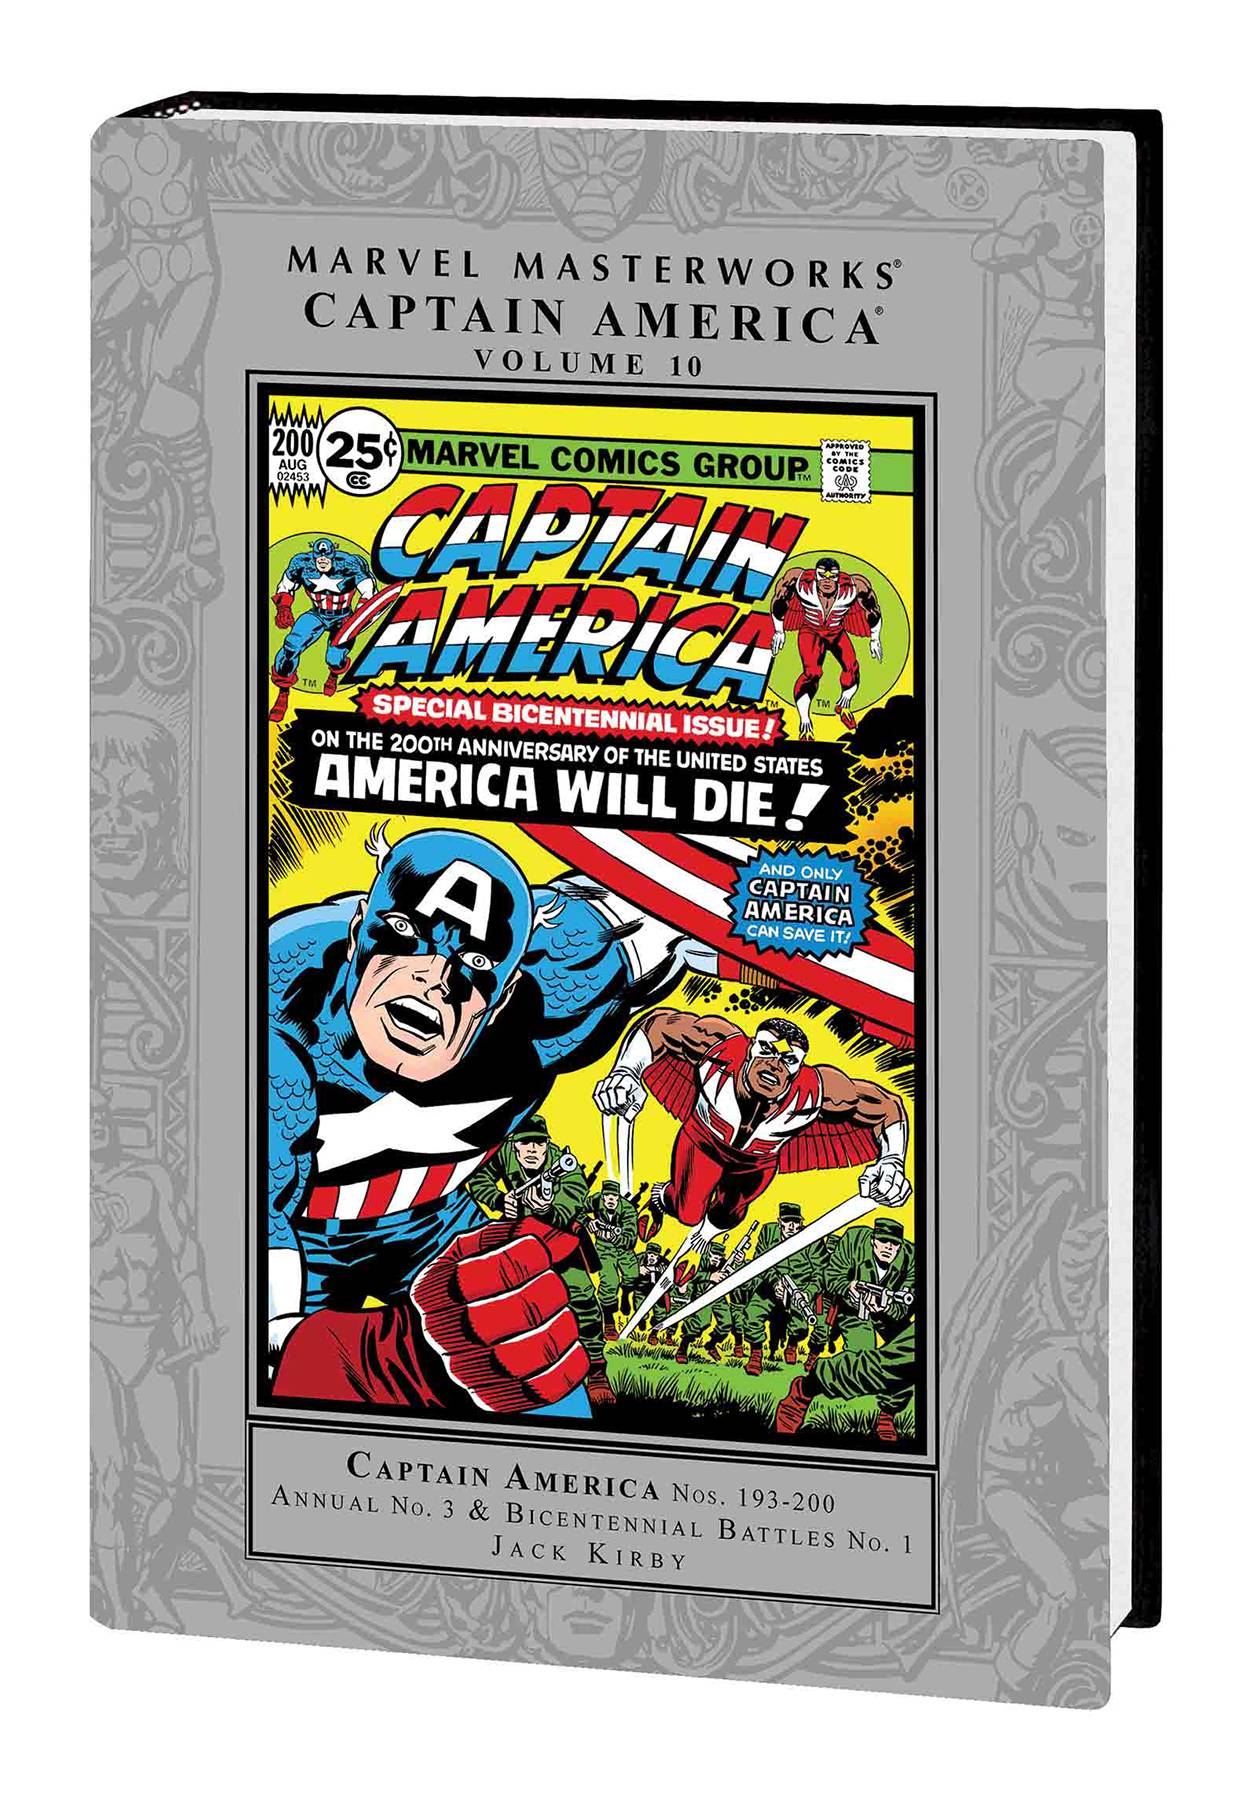 Marvel Masterworks Captain America Hardcover Volume 10